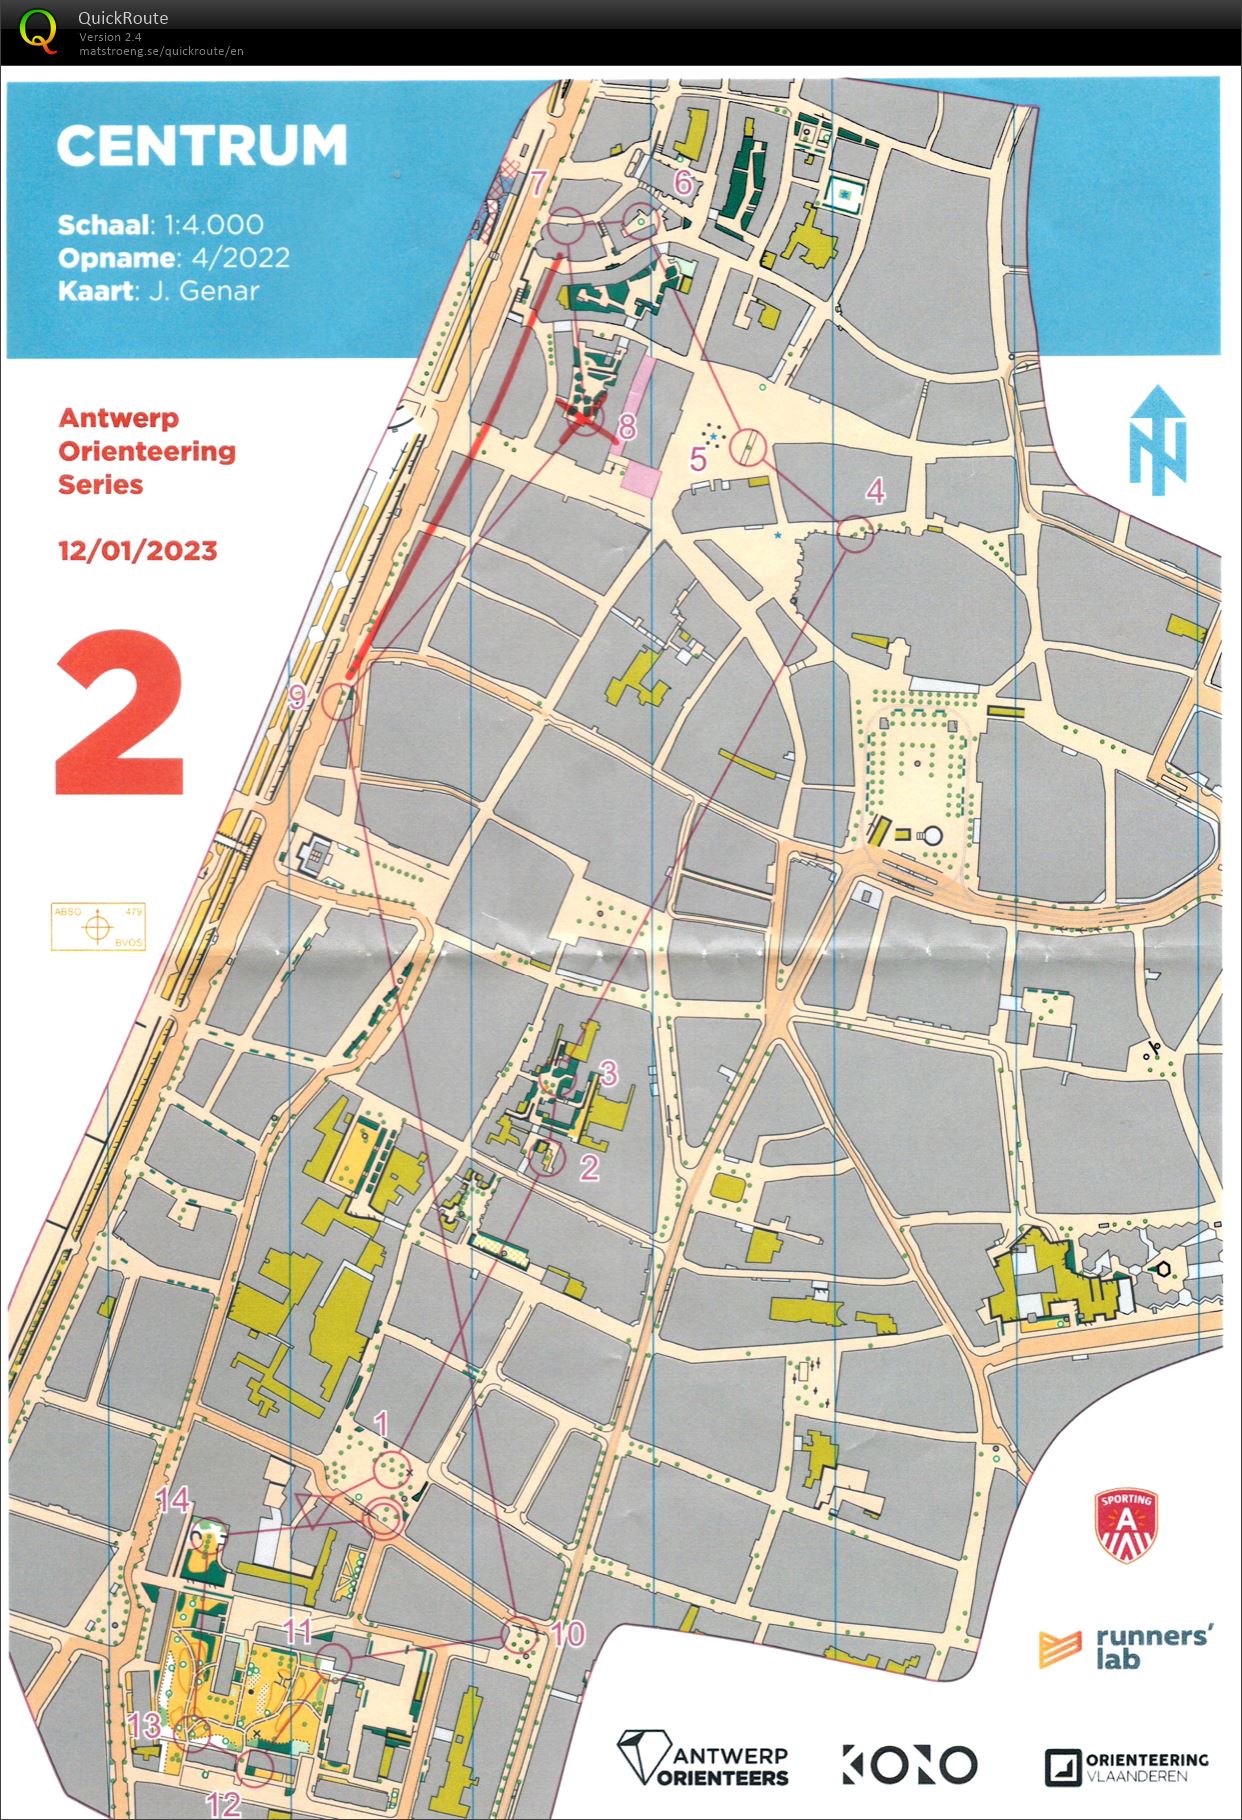 Antwerp Orienteering Series - Centrum - Kort (12-01-2023)